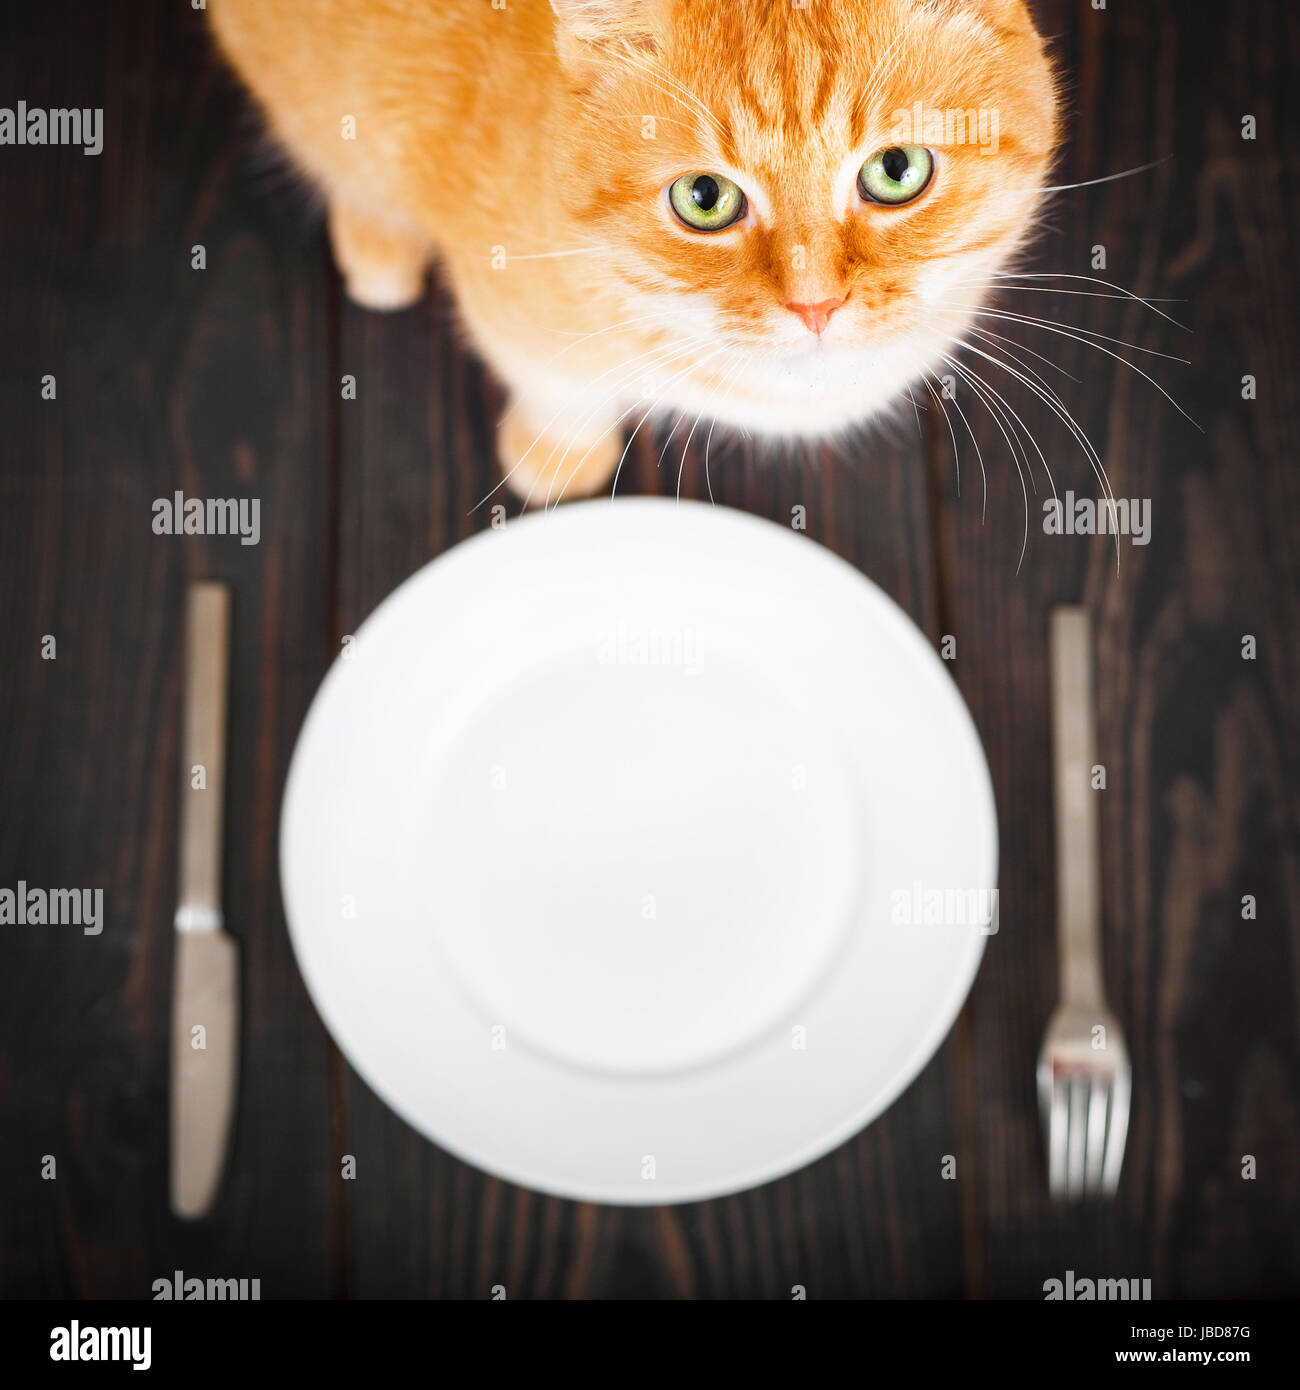 Waiting for dinner. Котик с пустой тарелкой. Кот в тарелке. Голодный кот. Столовая для кошки.